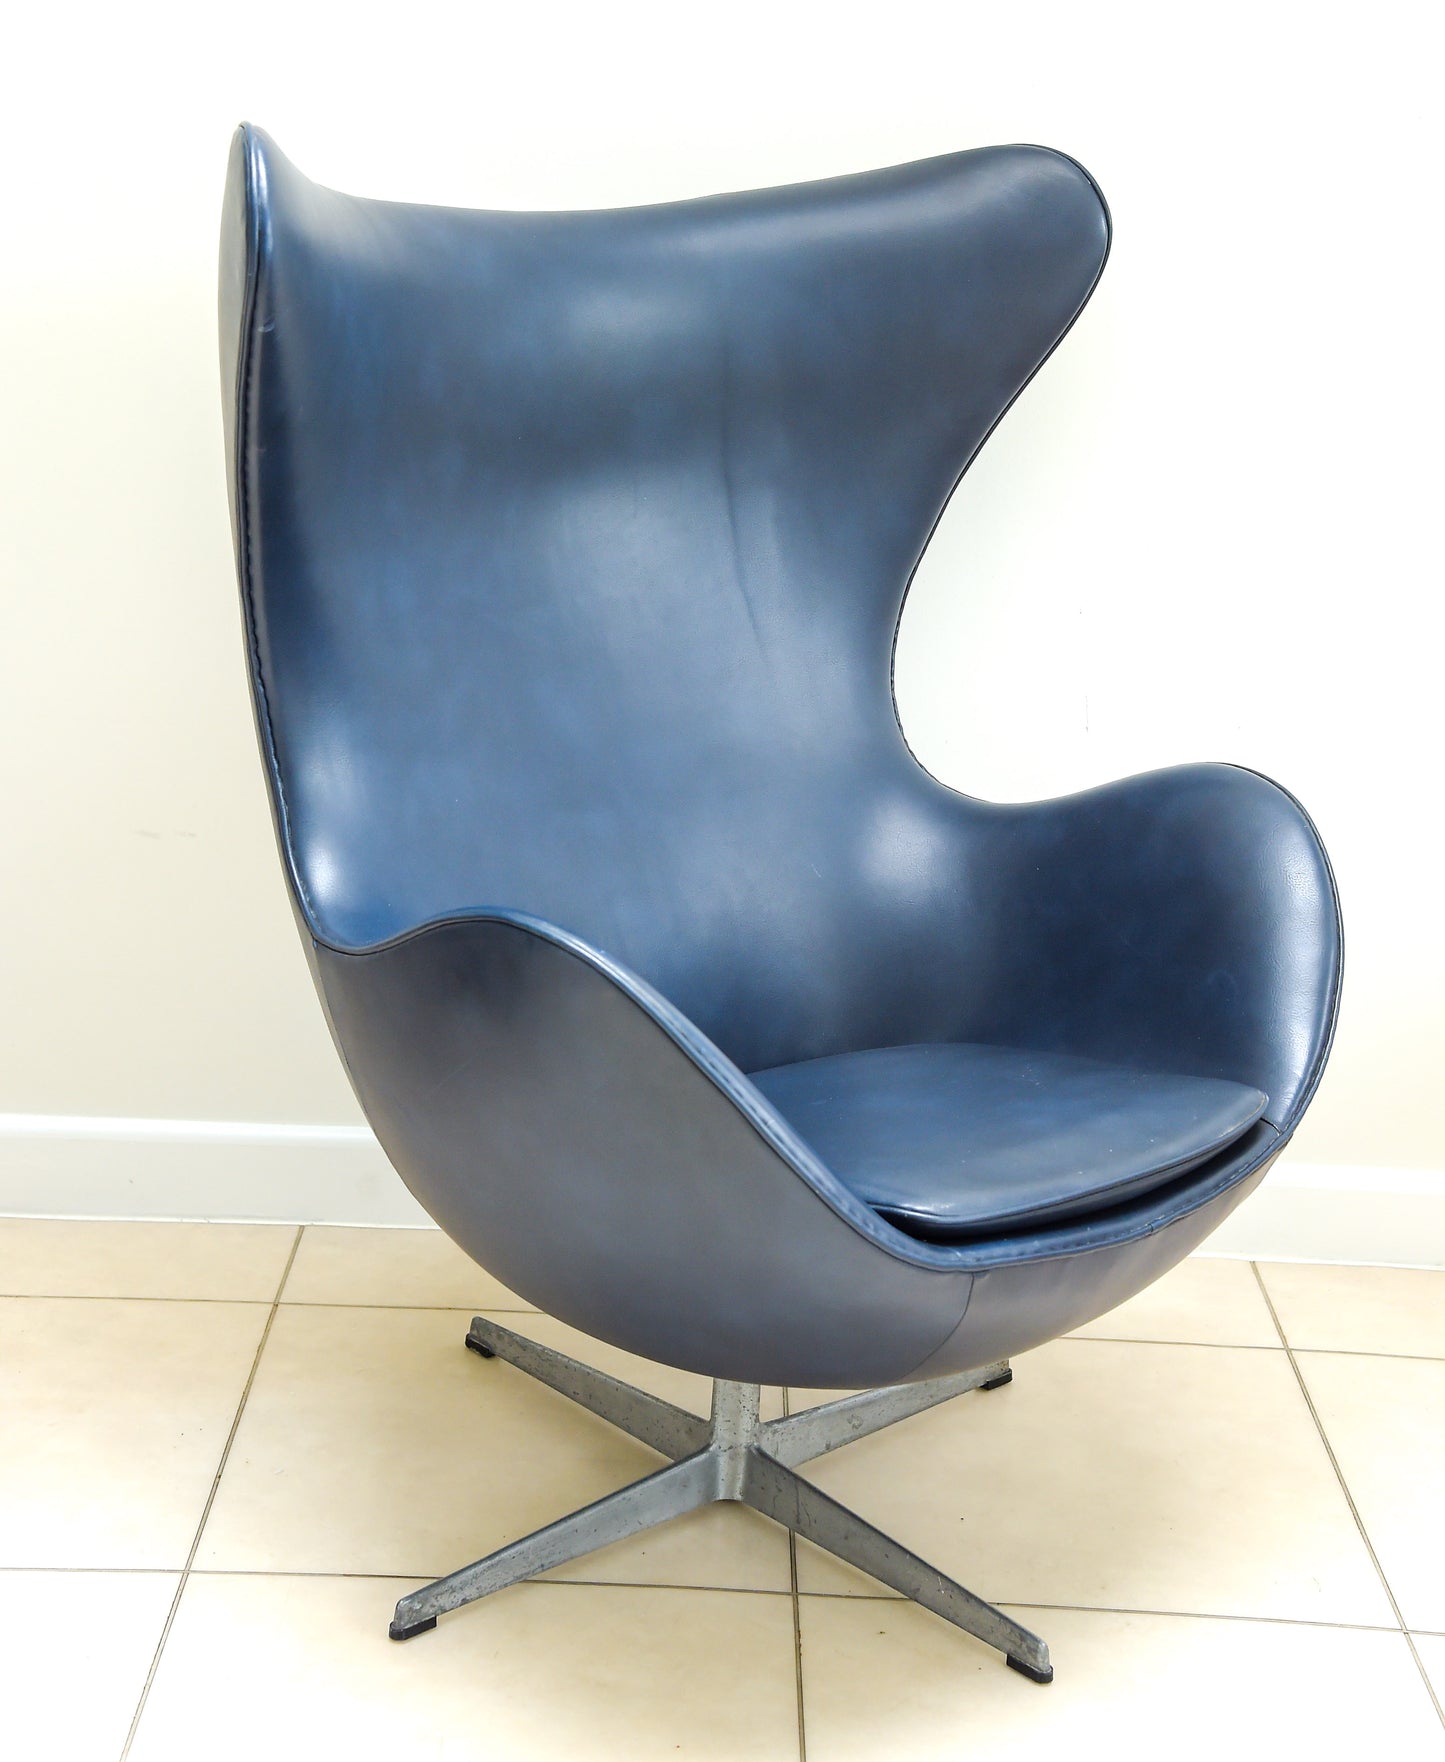 Egg chair designed by Arne Jacobsen for Fritz Hansen, Denmark.